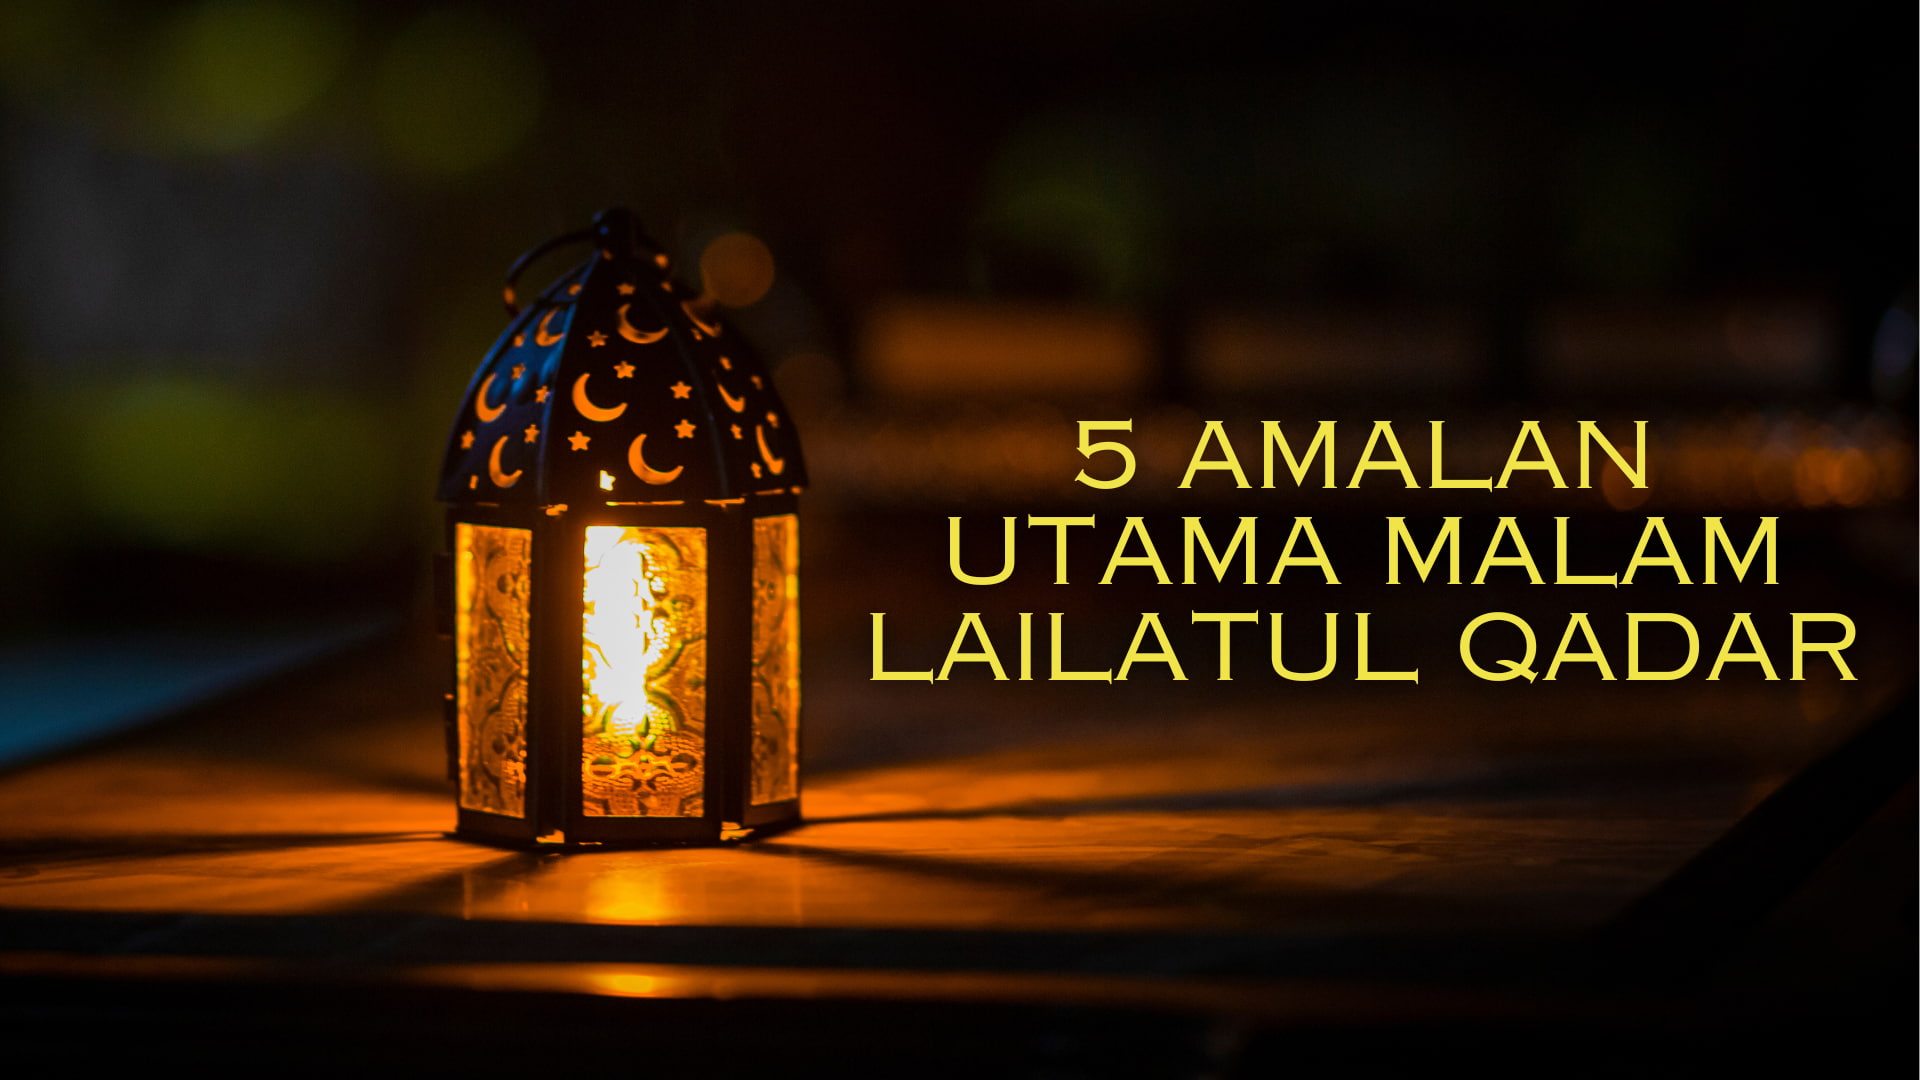 5 Amalan Sewaktu Iktikaf di 10 Malam Terakhir Bulan Ramadan untuk  Menjemput Malam Lailatul Qadar